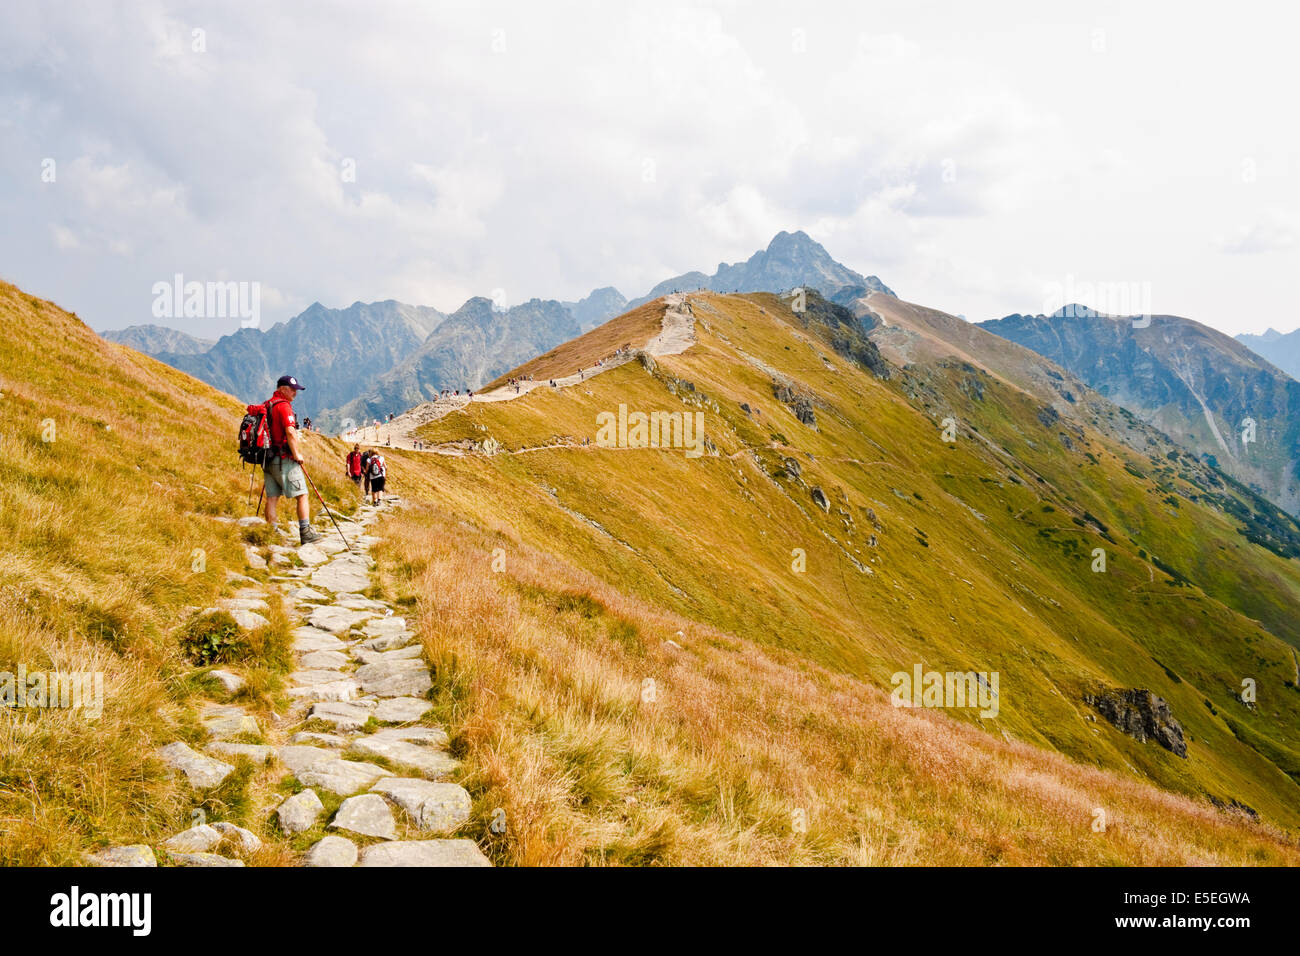 KASPROWY WIERCH, Pologne - 3 septembre : un homme équipé pour la randonnée sur le sentier de marche dans les montagnes Tatras, le 3 septembre Banque D'Images